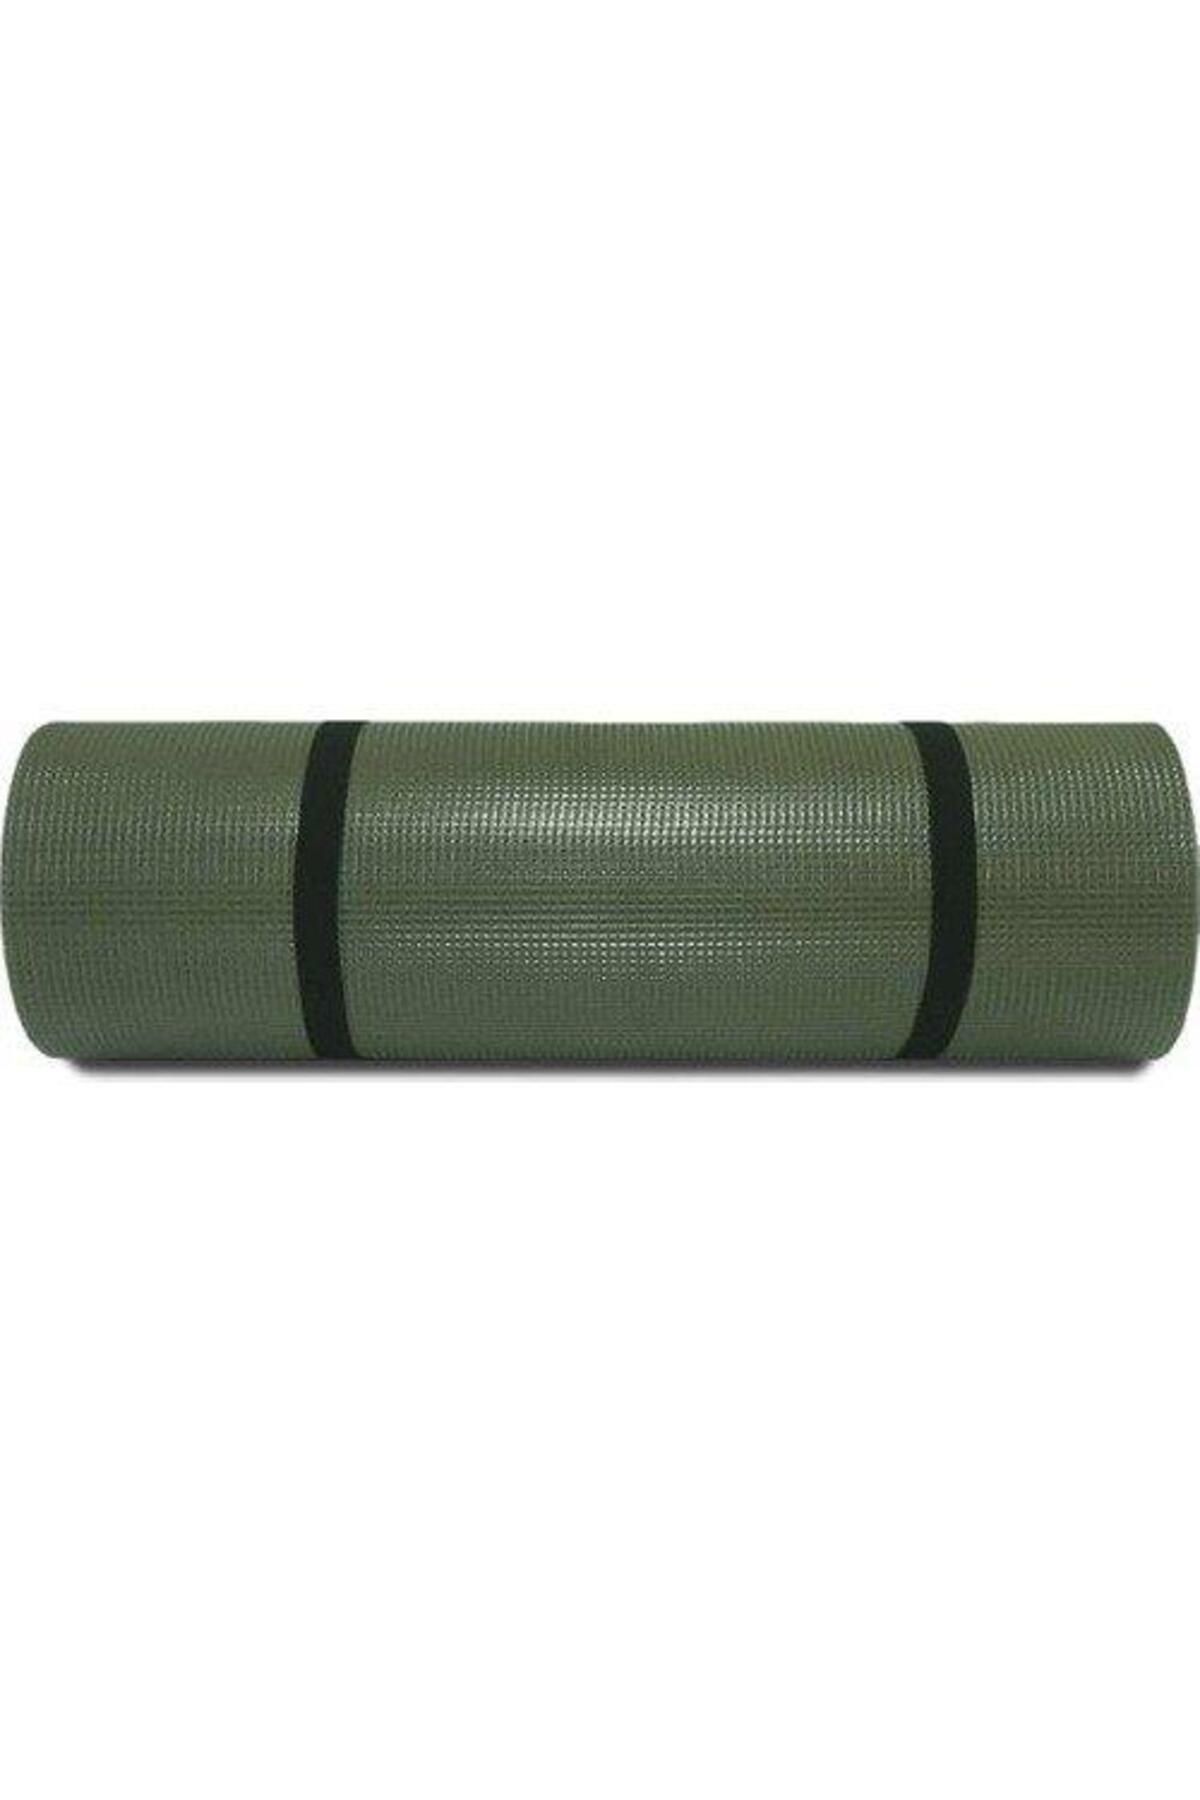 SİNGLE SWORD 60x180x1,2 Cm Çok Amaçlı Mat Kamp Spor Egzersiz Plates Yoga Minderi-mat